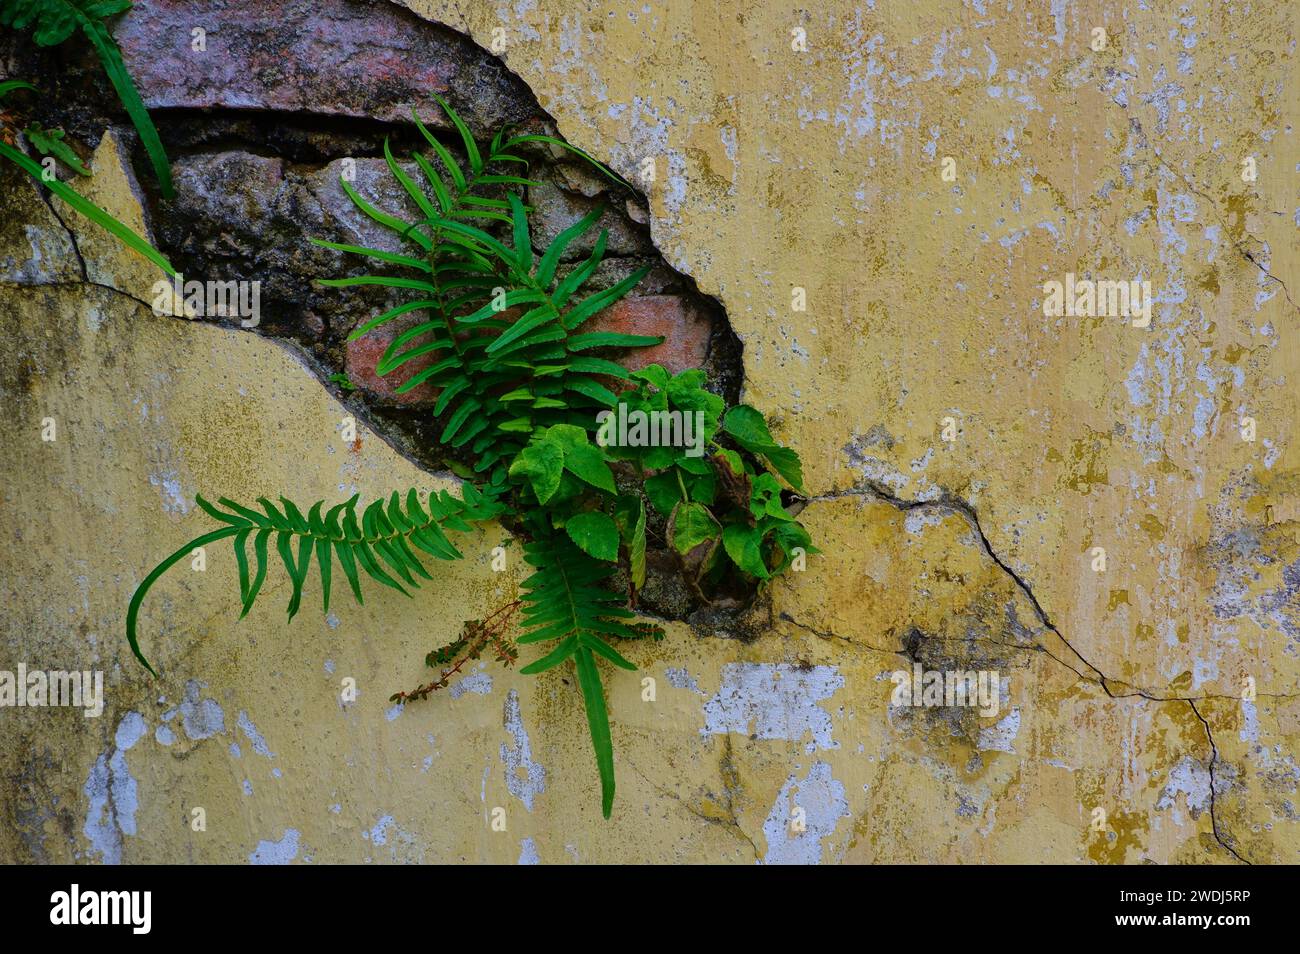 Triomphe de la nature : des plantes vertes éclatantes traversent un mur de briques jaunes vintage, créant une harmonie entre la décomposition urbaine et le charme botanique. Banque D'Images